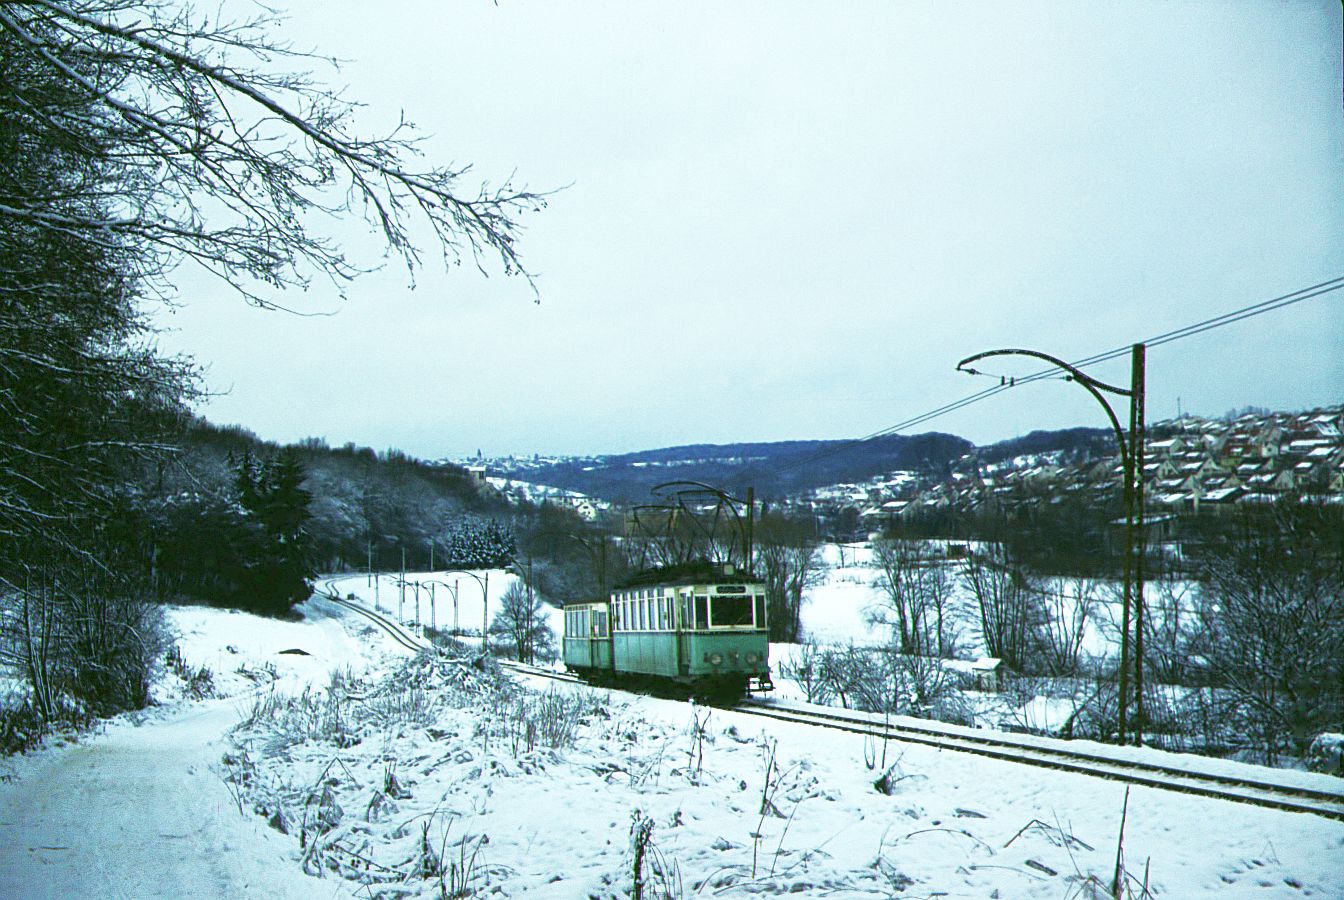 END__Zug erklimmt die Anhöhe zwischen Scharnhausen und Neuhausen.__15-01-1977